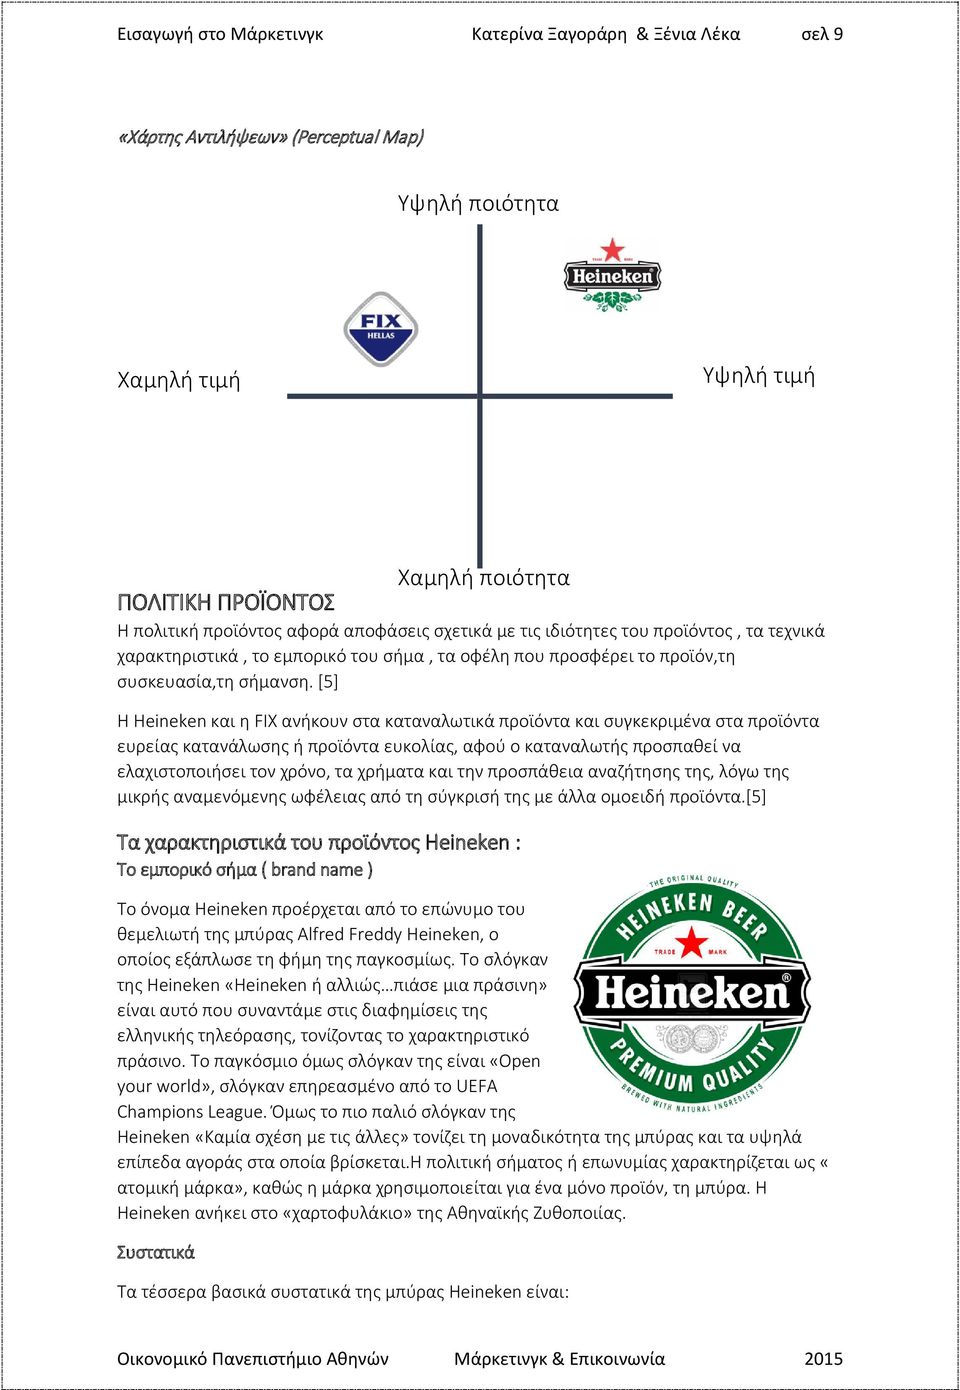 [5] Η Heineken και η FIX ανήκουν στα καταναλωτικά προϊόντα και συγκεκριμένα στα προϊόντα ευρείας κατανάλωσης ή προϊόντα ευκολίας, αφού ο καταναλωτής προσπαθεί να ελαχιστοποιήσει τον χρόνο, τα χρήματα